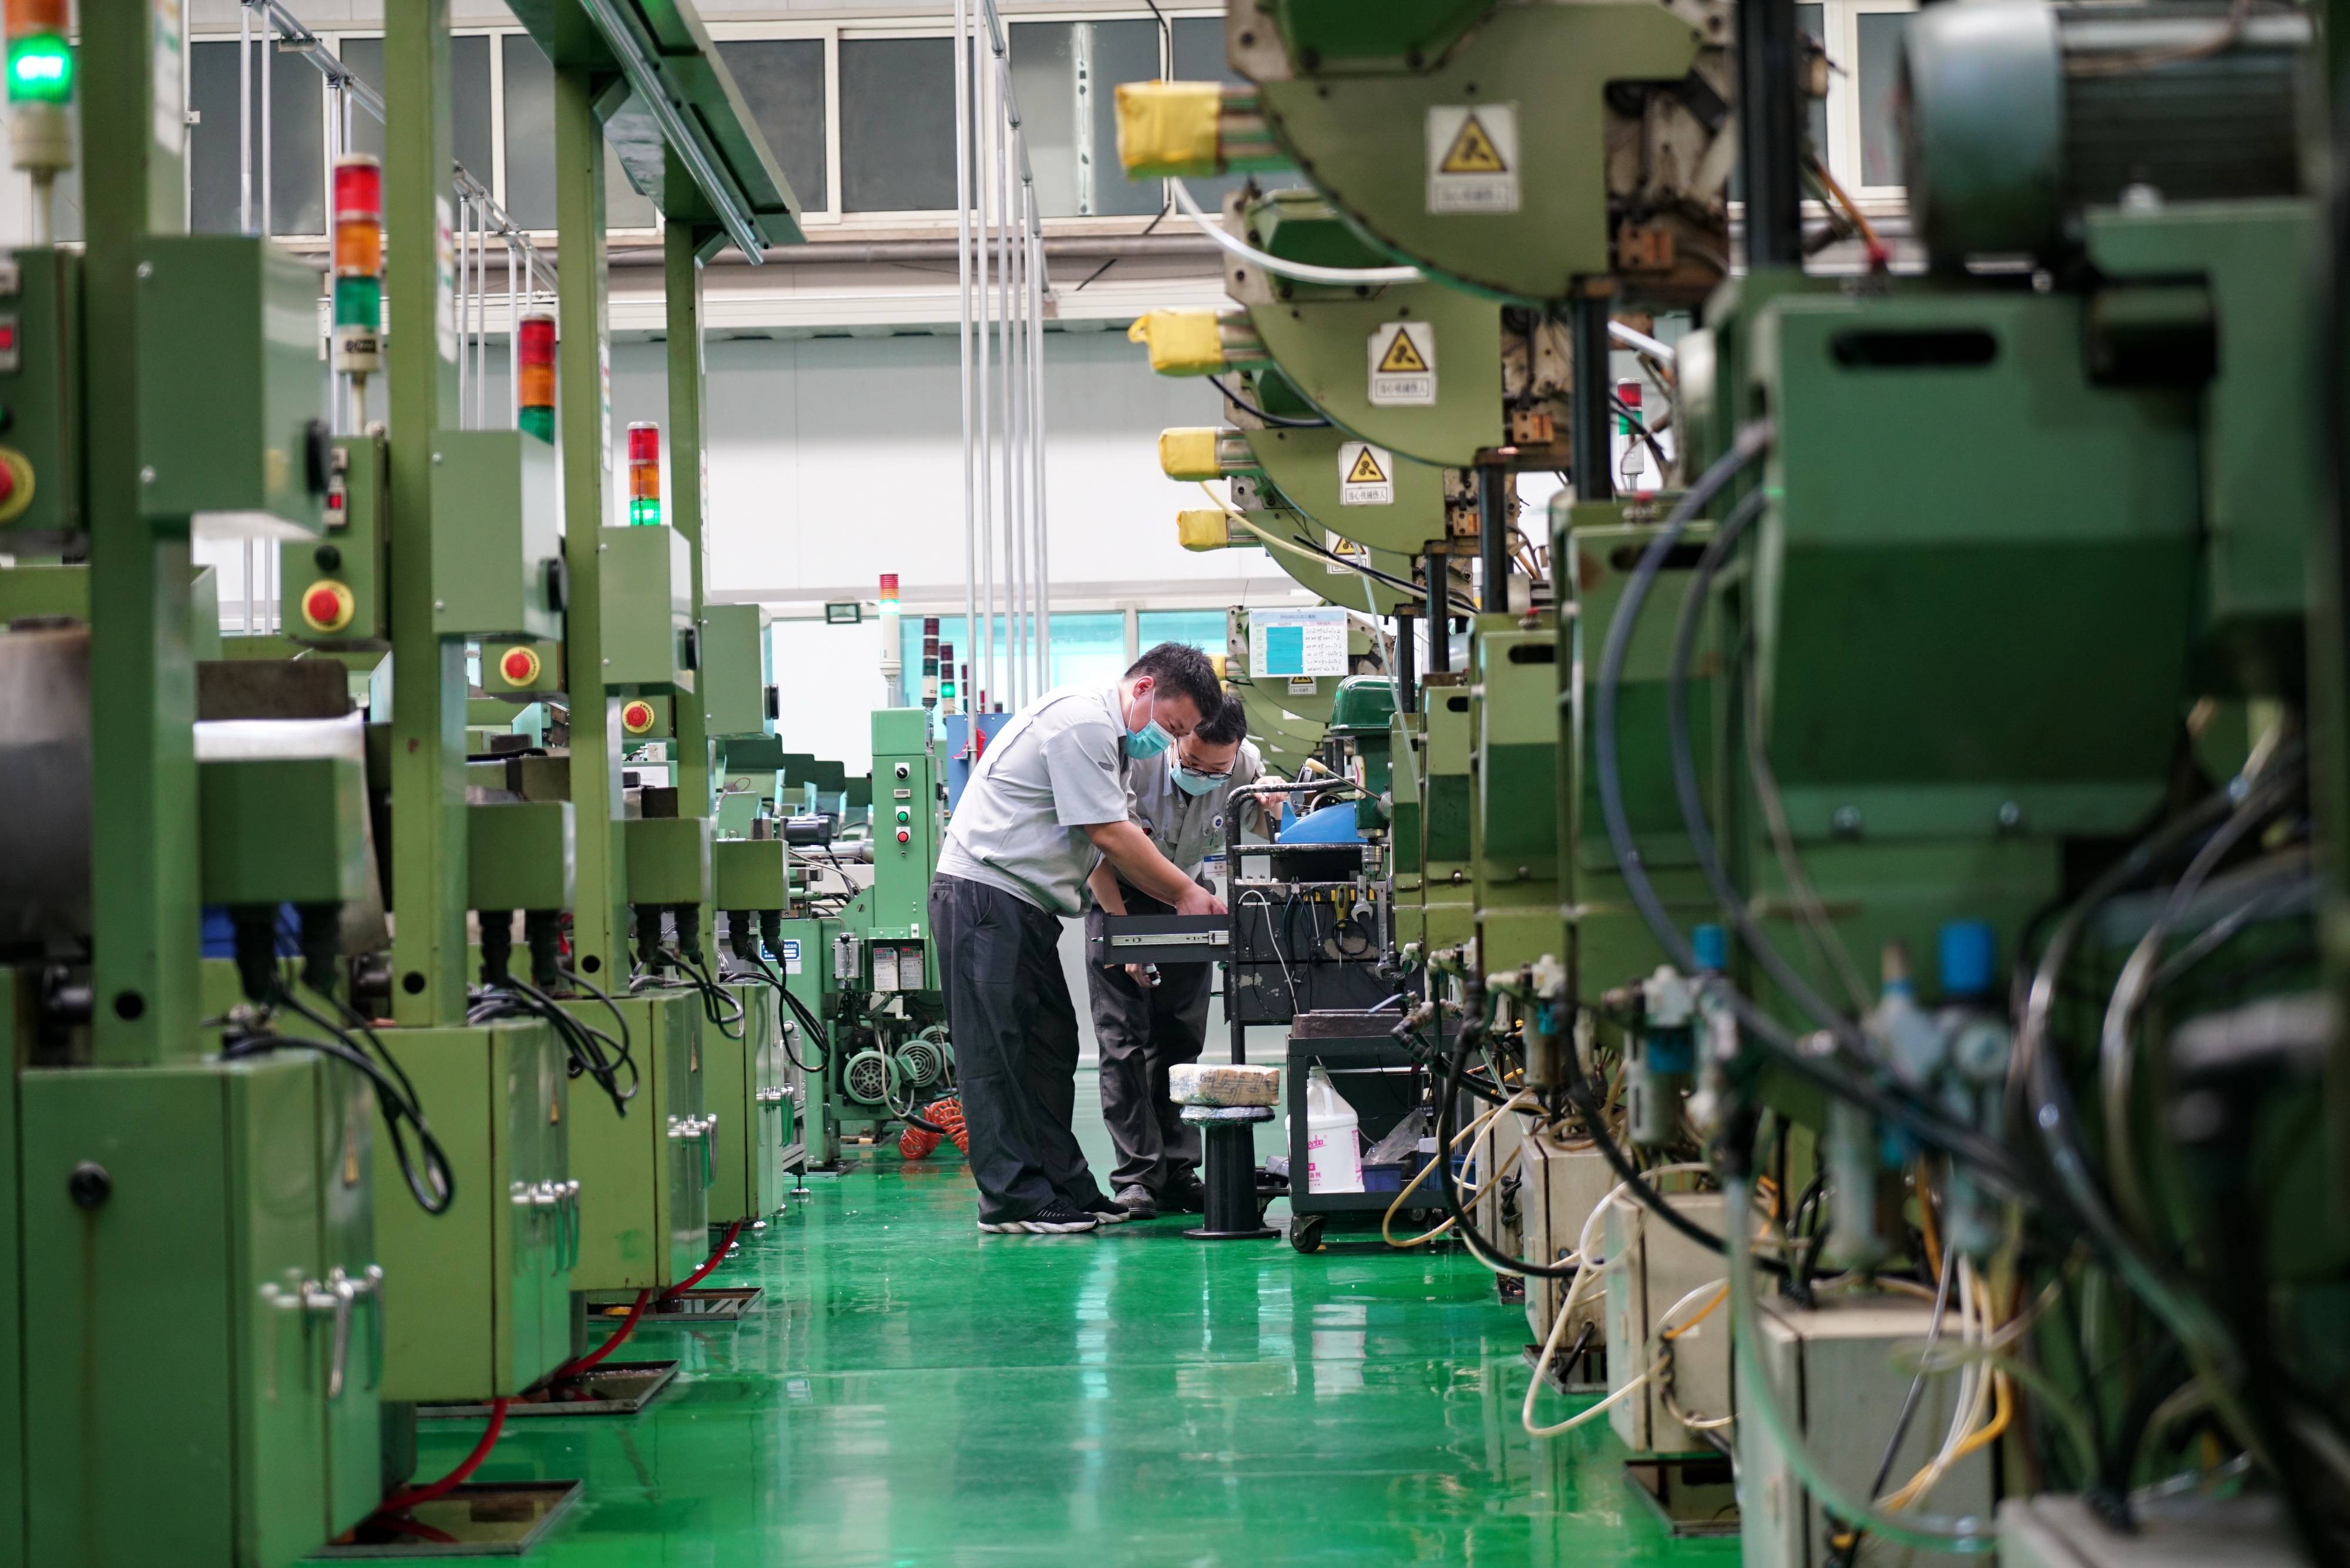 7月16日,唐山松下产业机器有限公司的工人在导电嘴生产车间内工作.